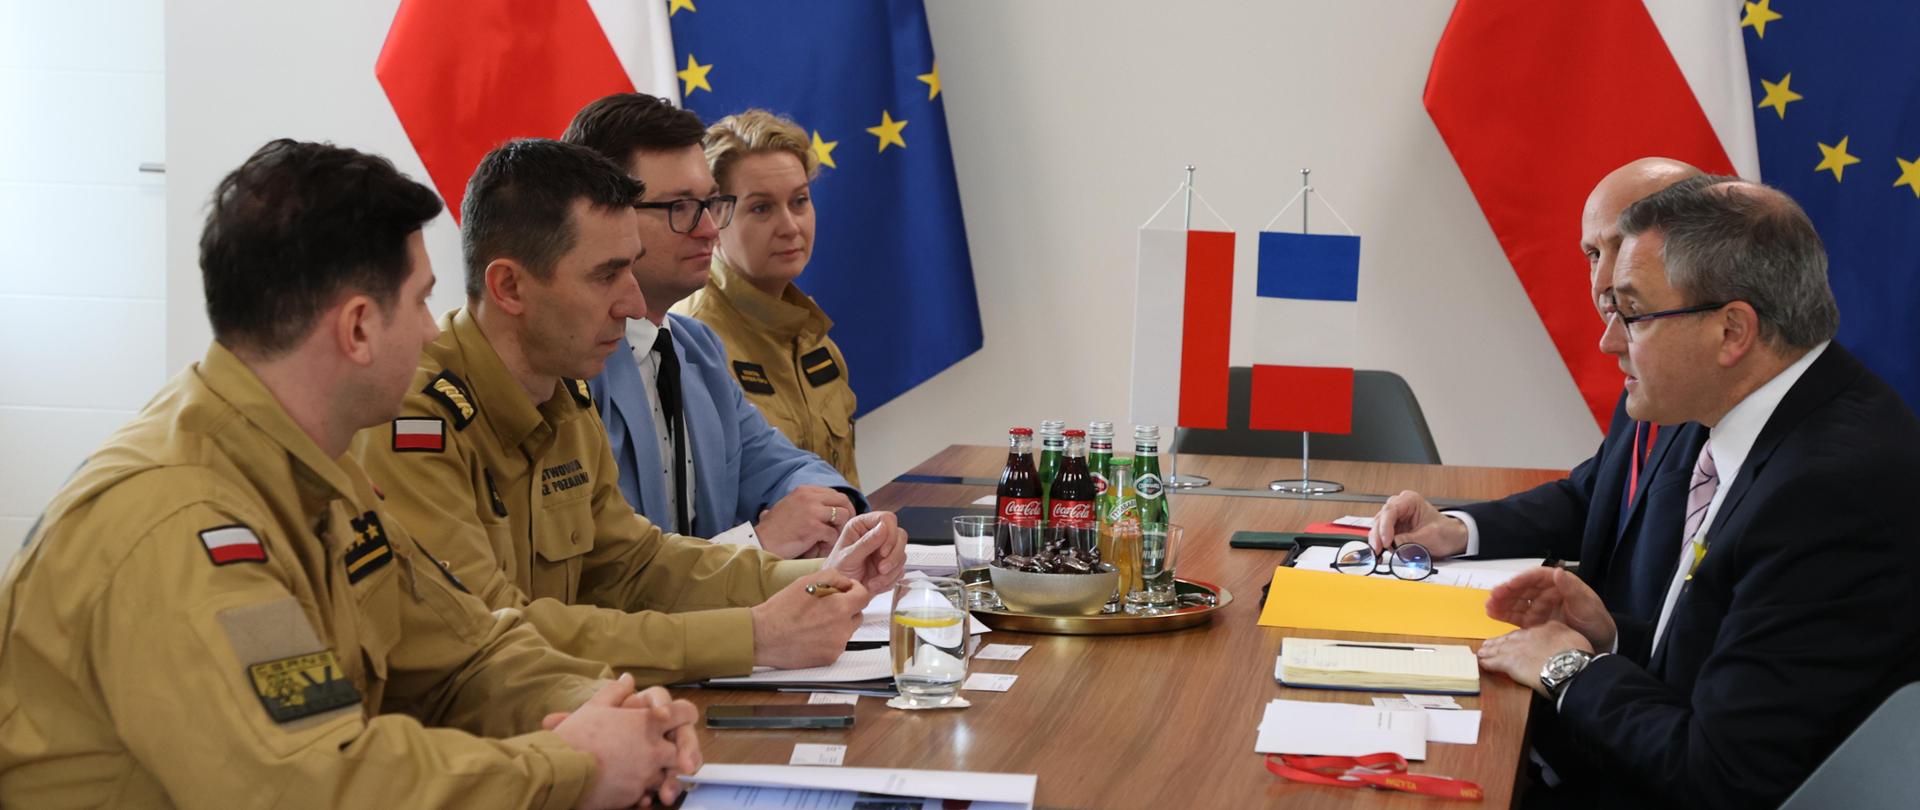 Uczestnicy spotkania siedzą przy stole podczas rozmów. Na stole stoją miniatury flag Polski i Francji. W tle wisi godło polskie oraz stoją na stojakach flagi Polski i Unii Europejskiej.